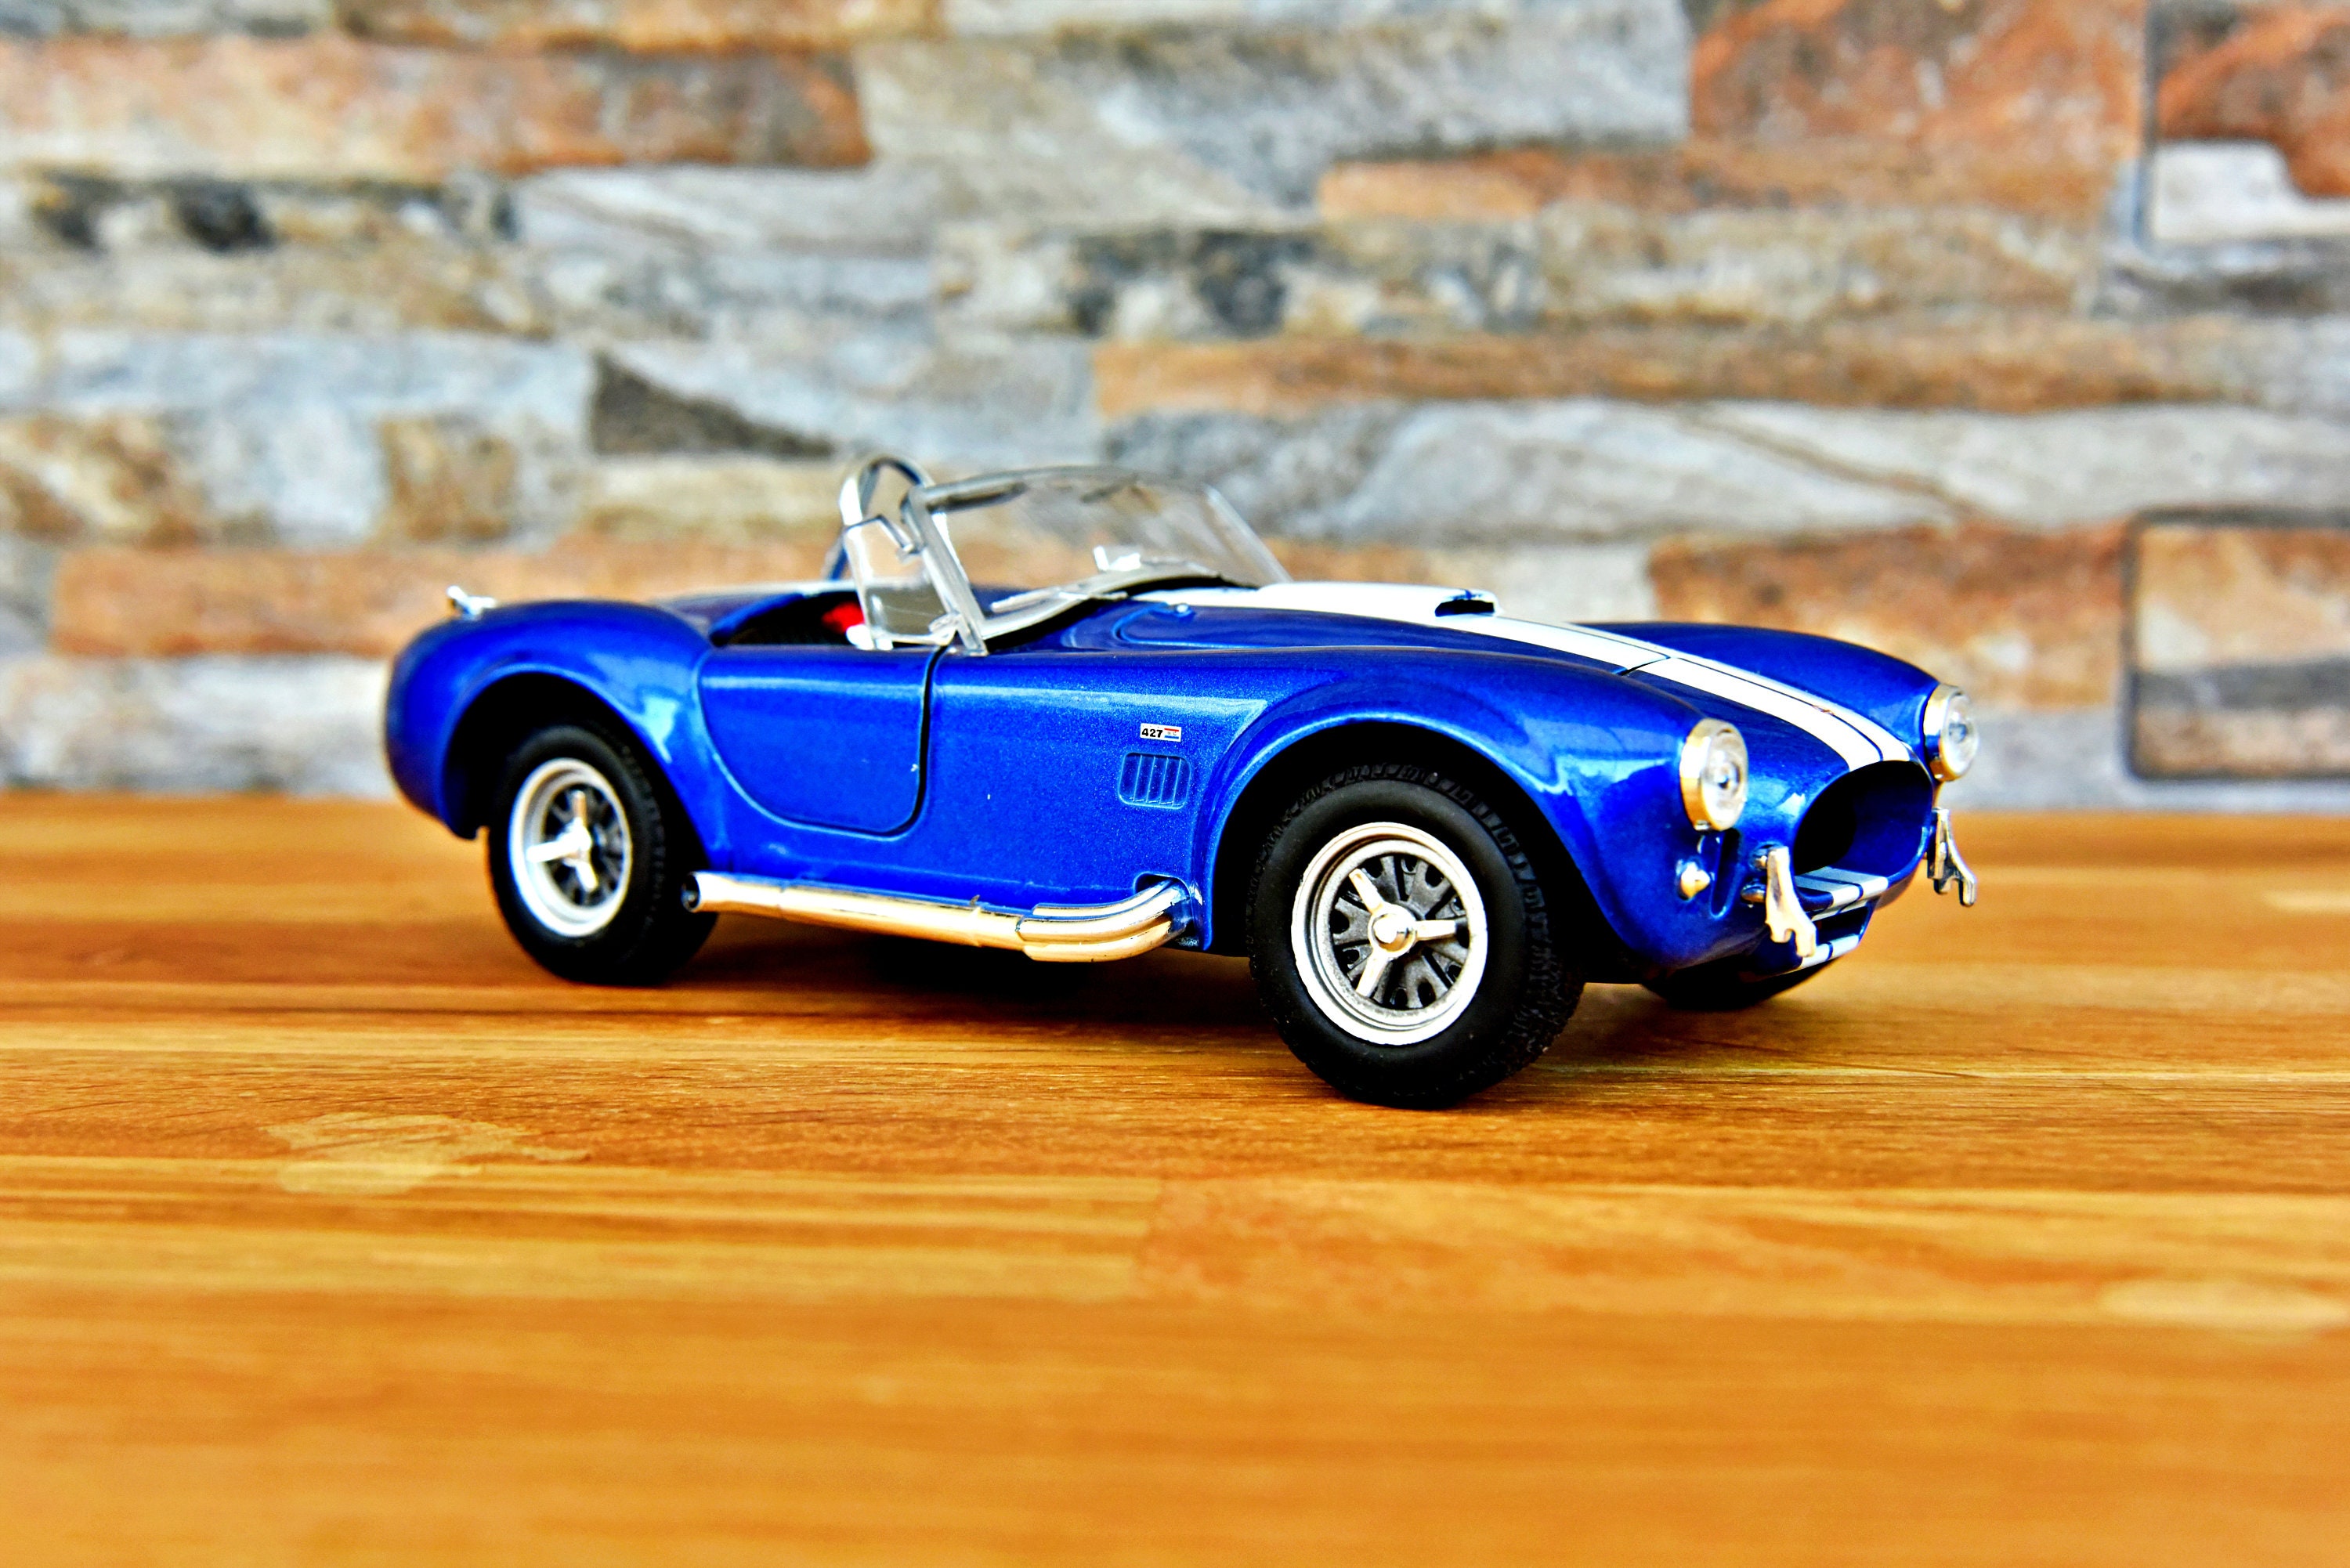 Miniatura Carro Colecionável Ford Shelby Cobra 427 1965 Azul